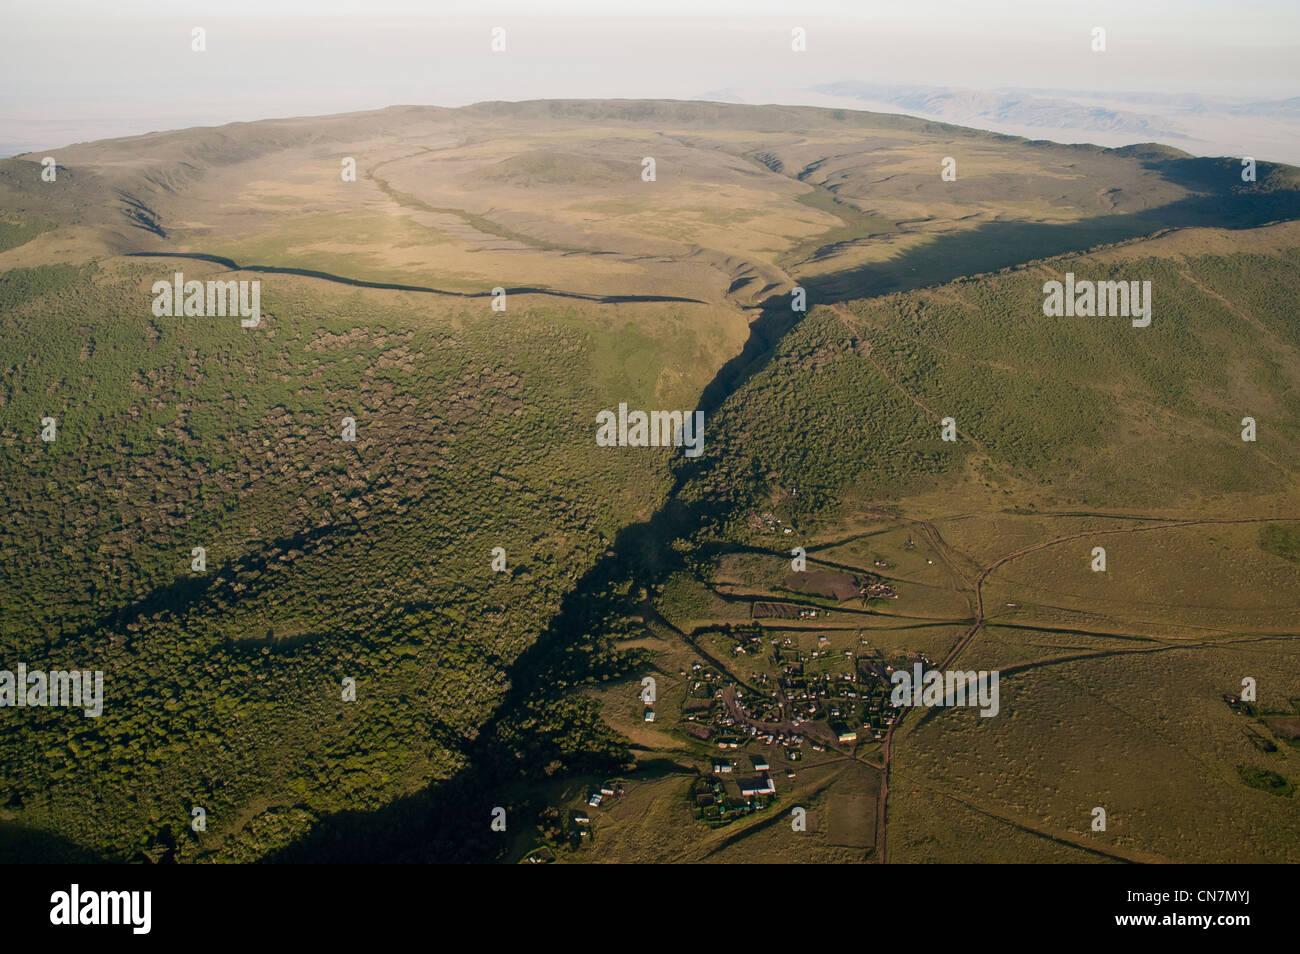 Cratère Olmoti et Maasai settlement, vue aérienne, Ngorongoro Conservation Area, Tanzania Banque D'Images